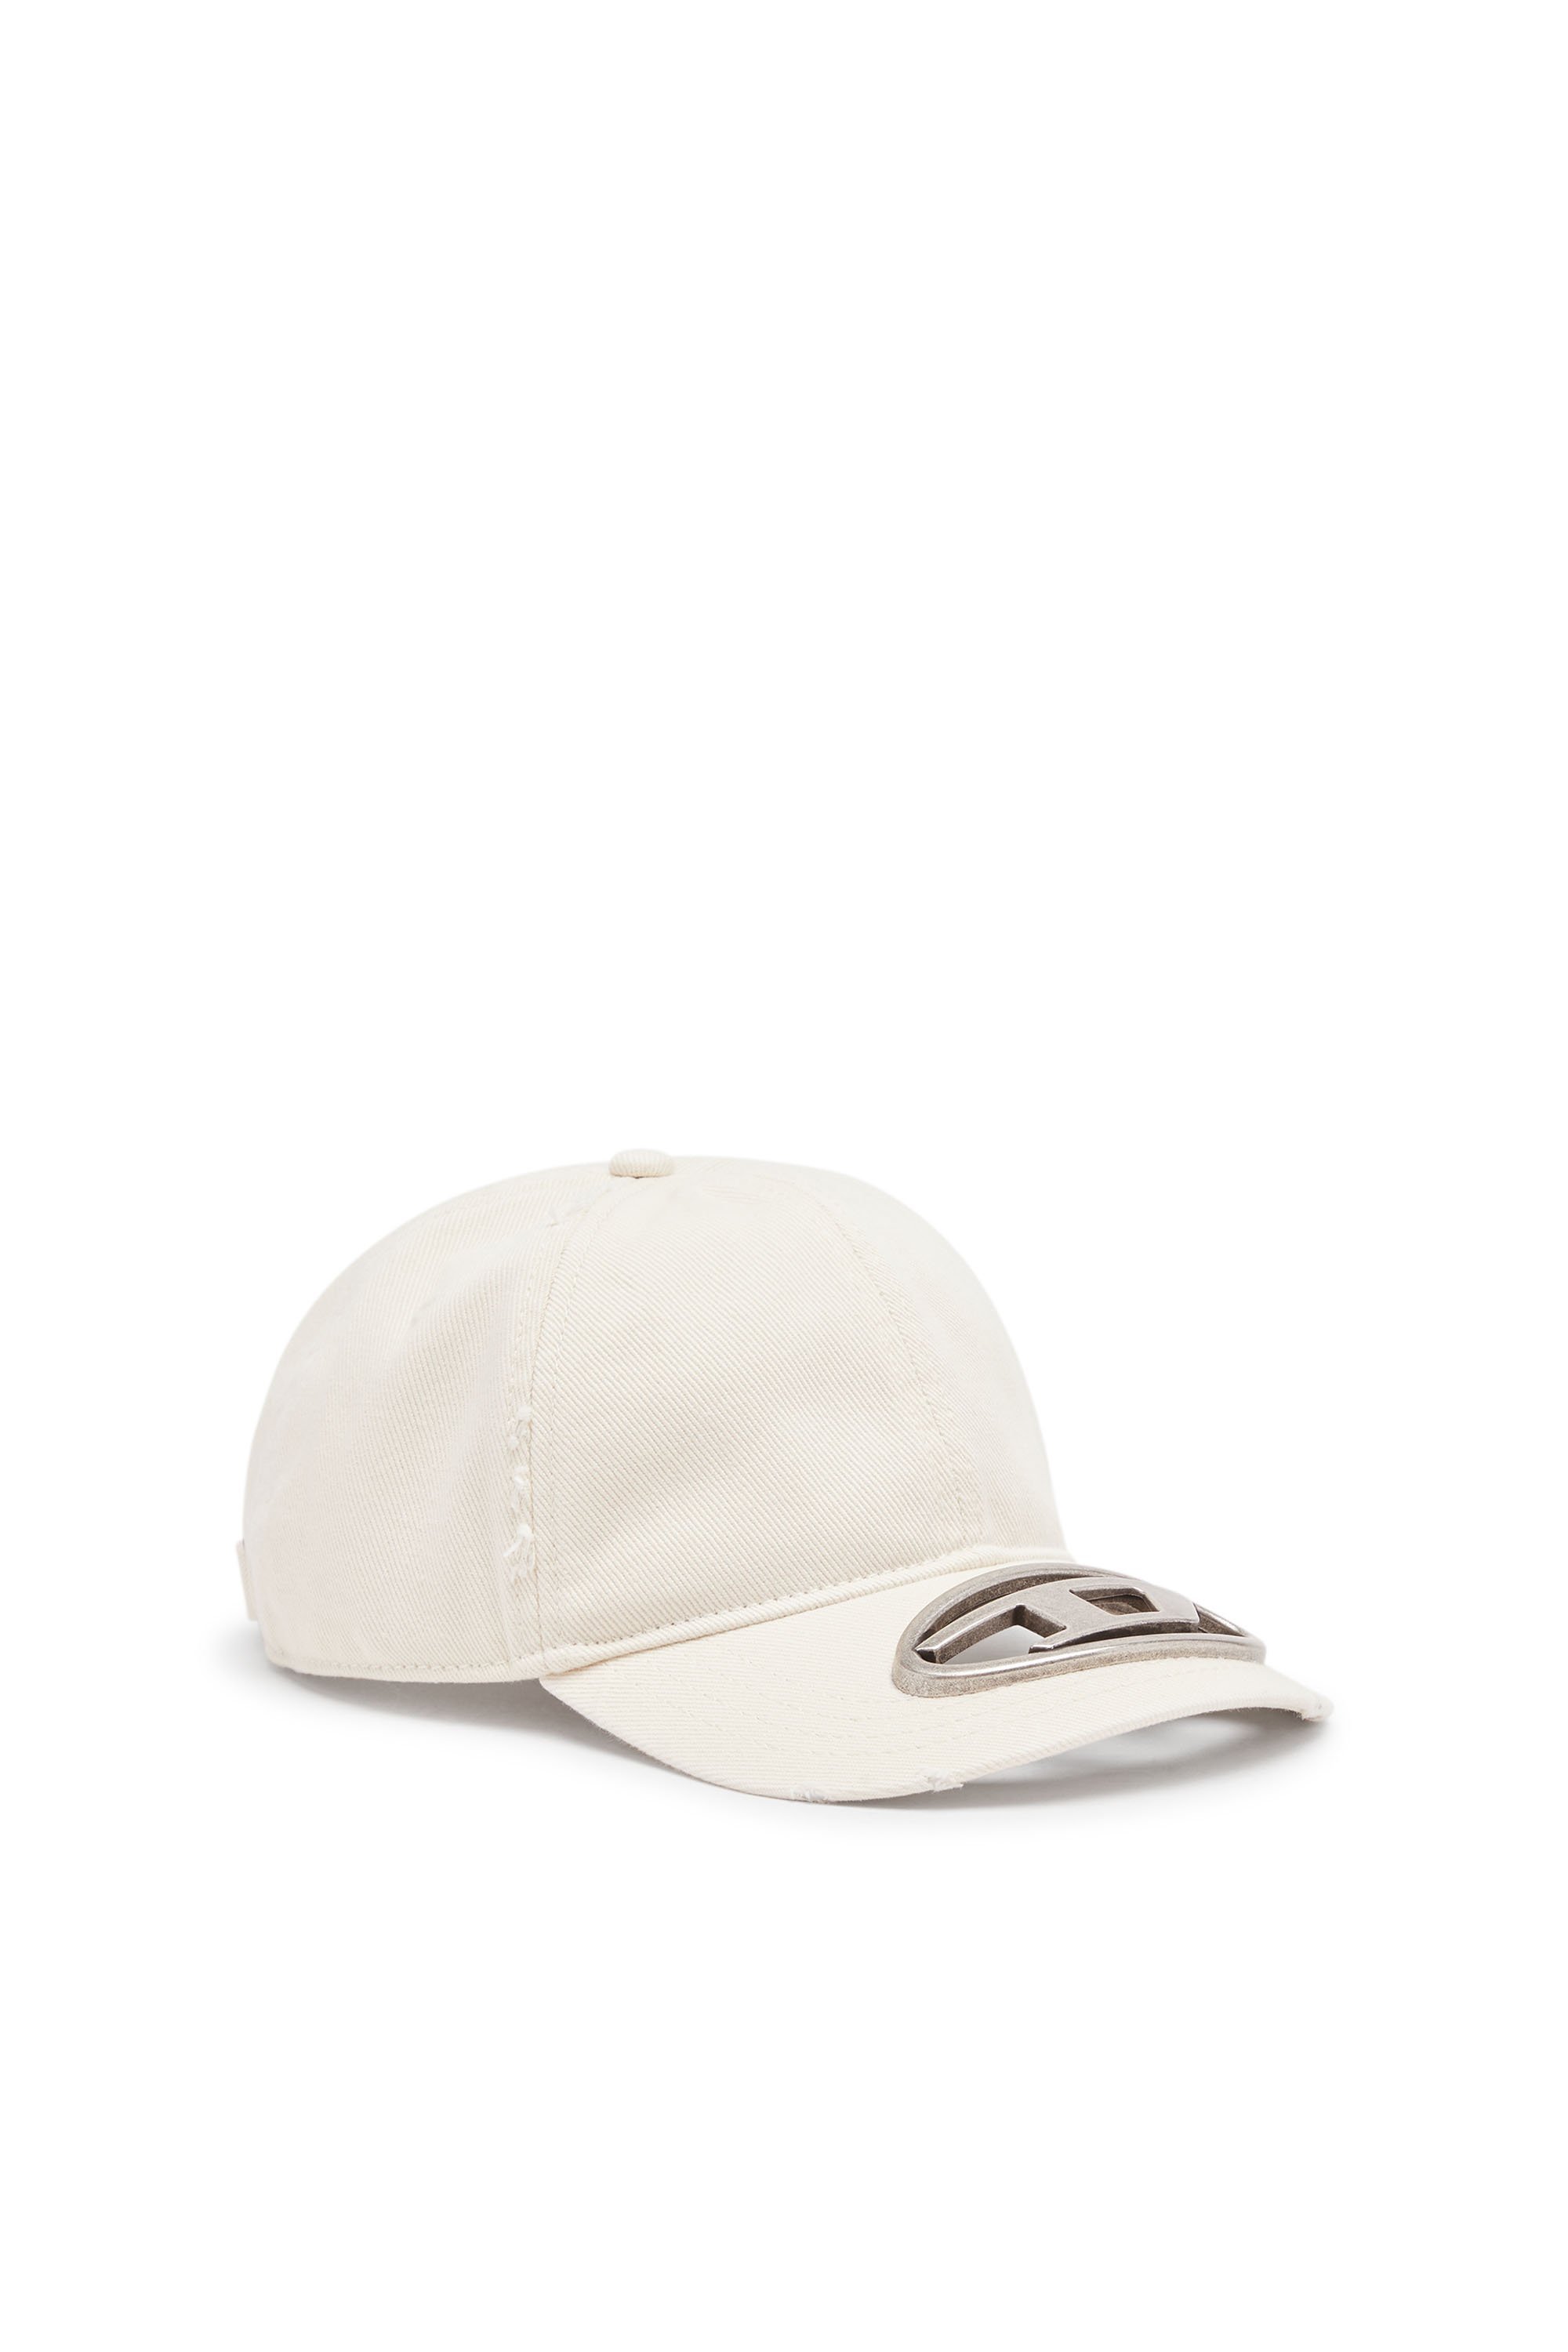 ディーゼル DIESEL メンズ キャップ C-BEAST-A1 ディーゼル 帽子 キャップ ホワイト ブラック【送料無料】